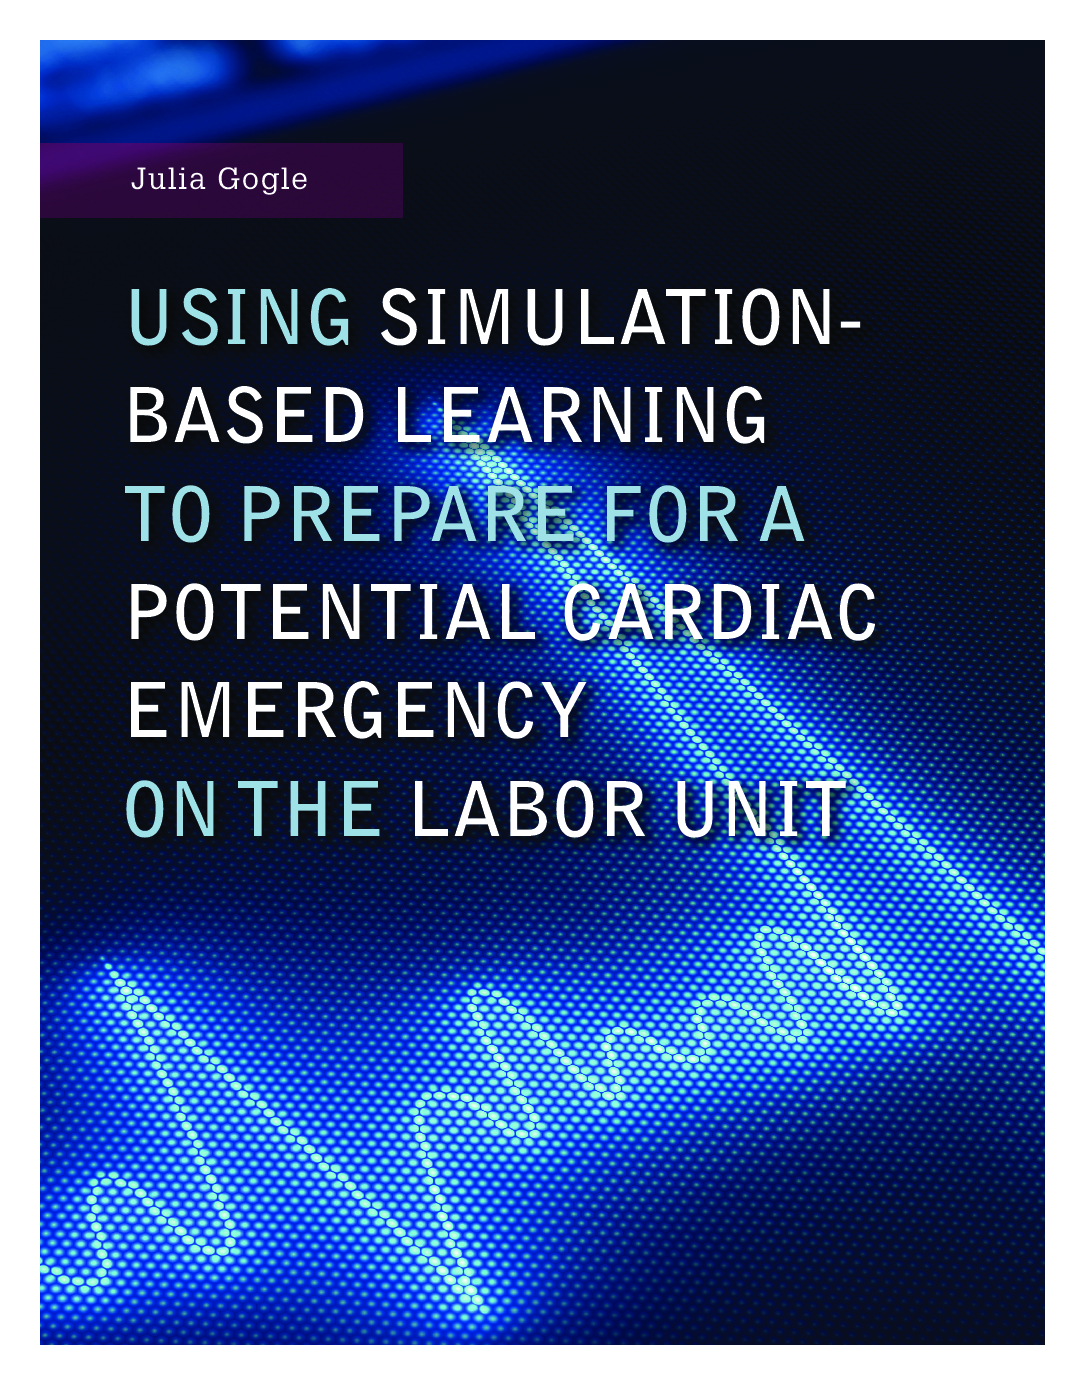 استفاده از یادگیری مبتنی بر شبیه سازی برای آماده سازی برای یک اورژانس بالقوه قلبی در بخش زایمان